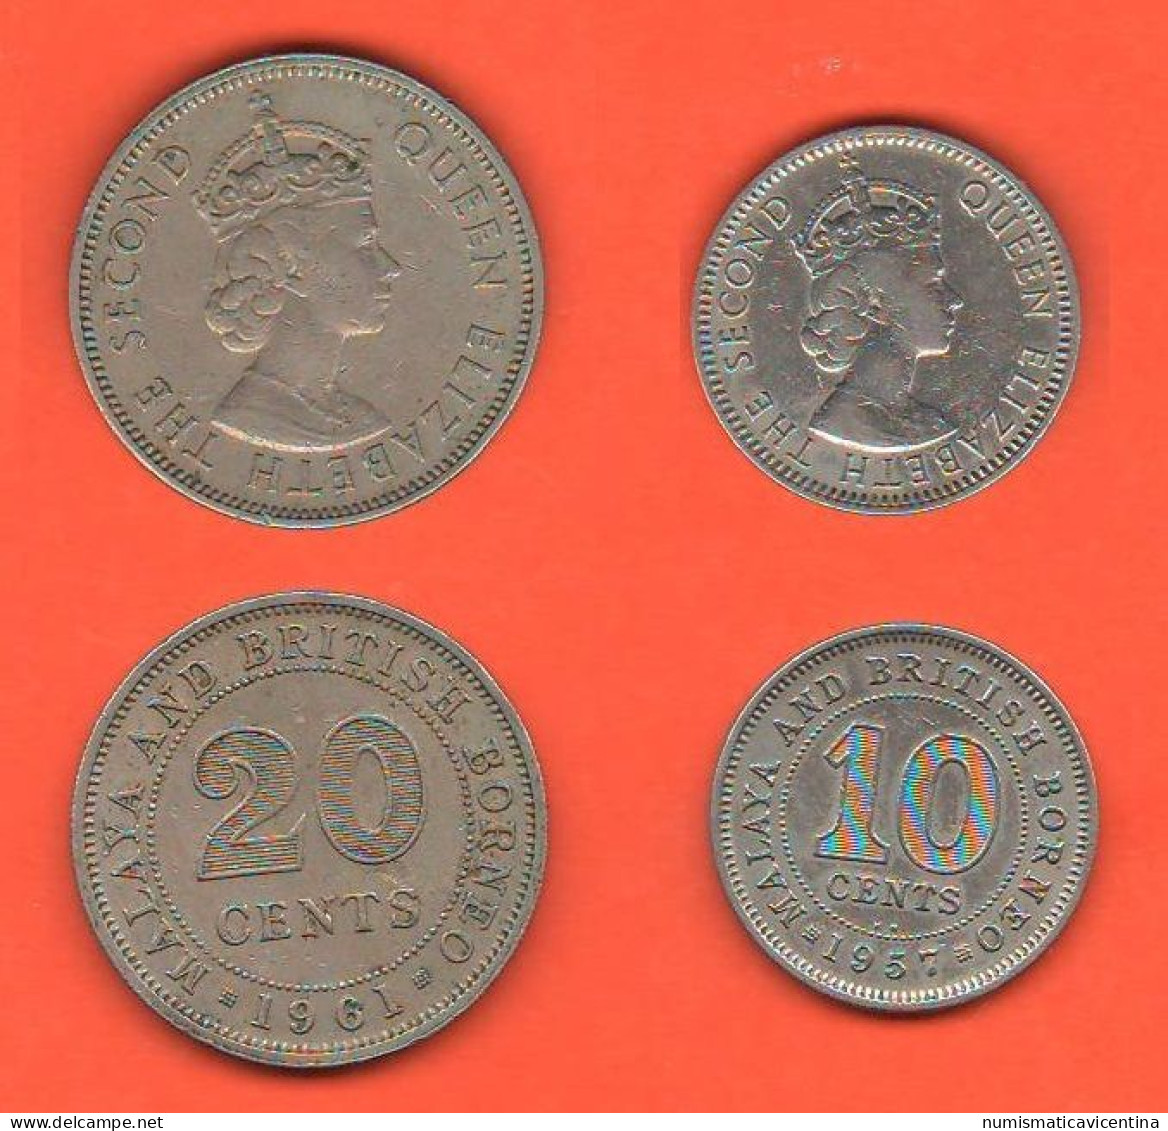 British Borneo 10 + 20 Cents 1957 E 1961 Borneo Britannico 10 + 20 Centesimi Nickel Coin Malesia Malaysia   C 7 - Kolonies